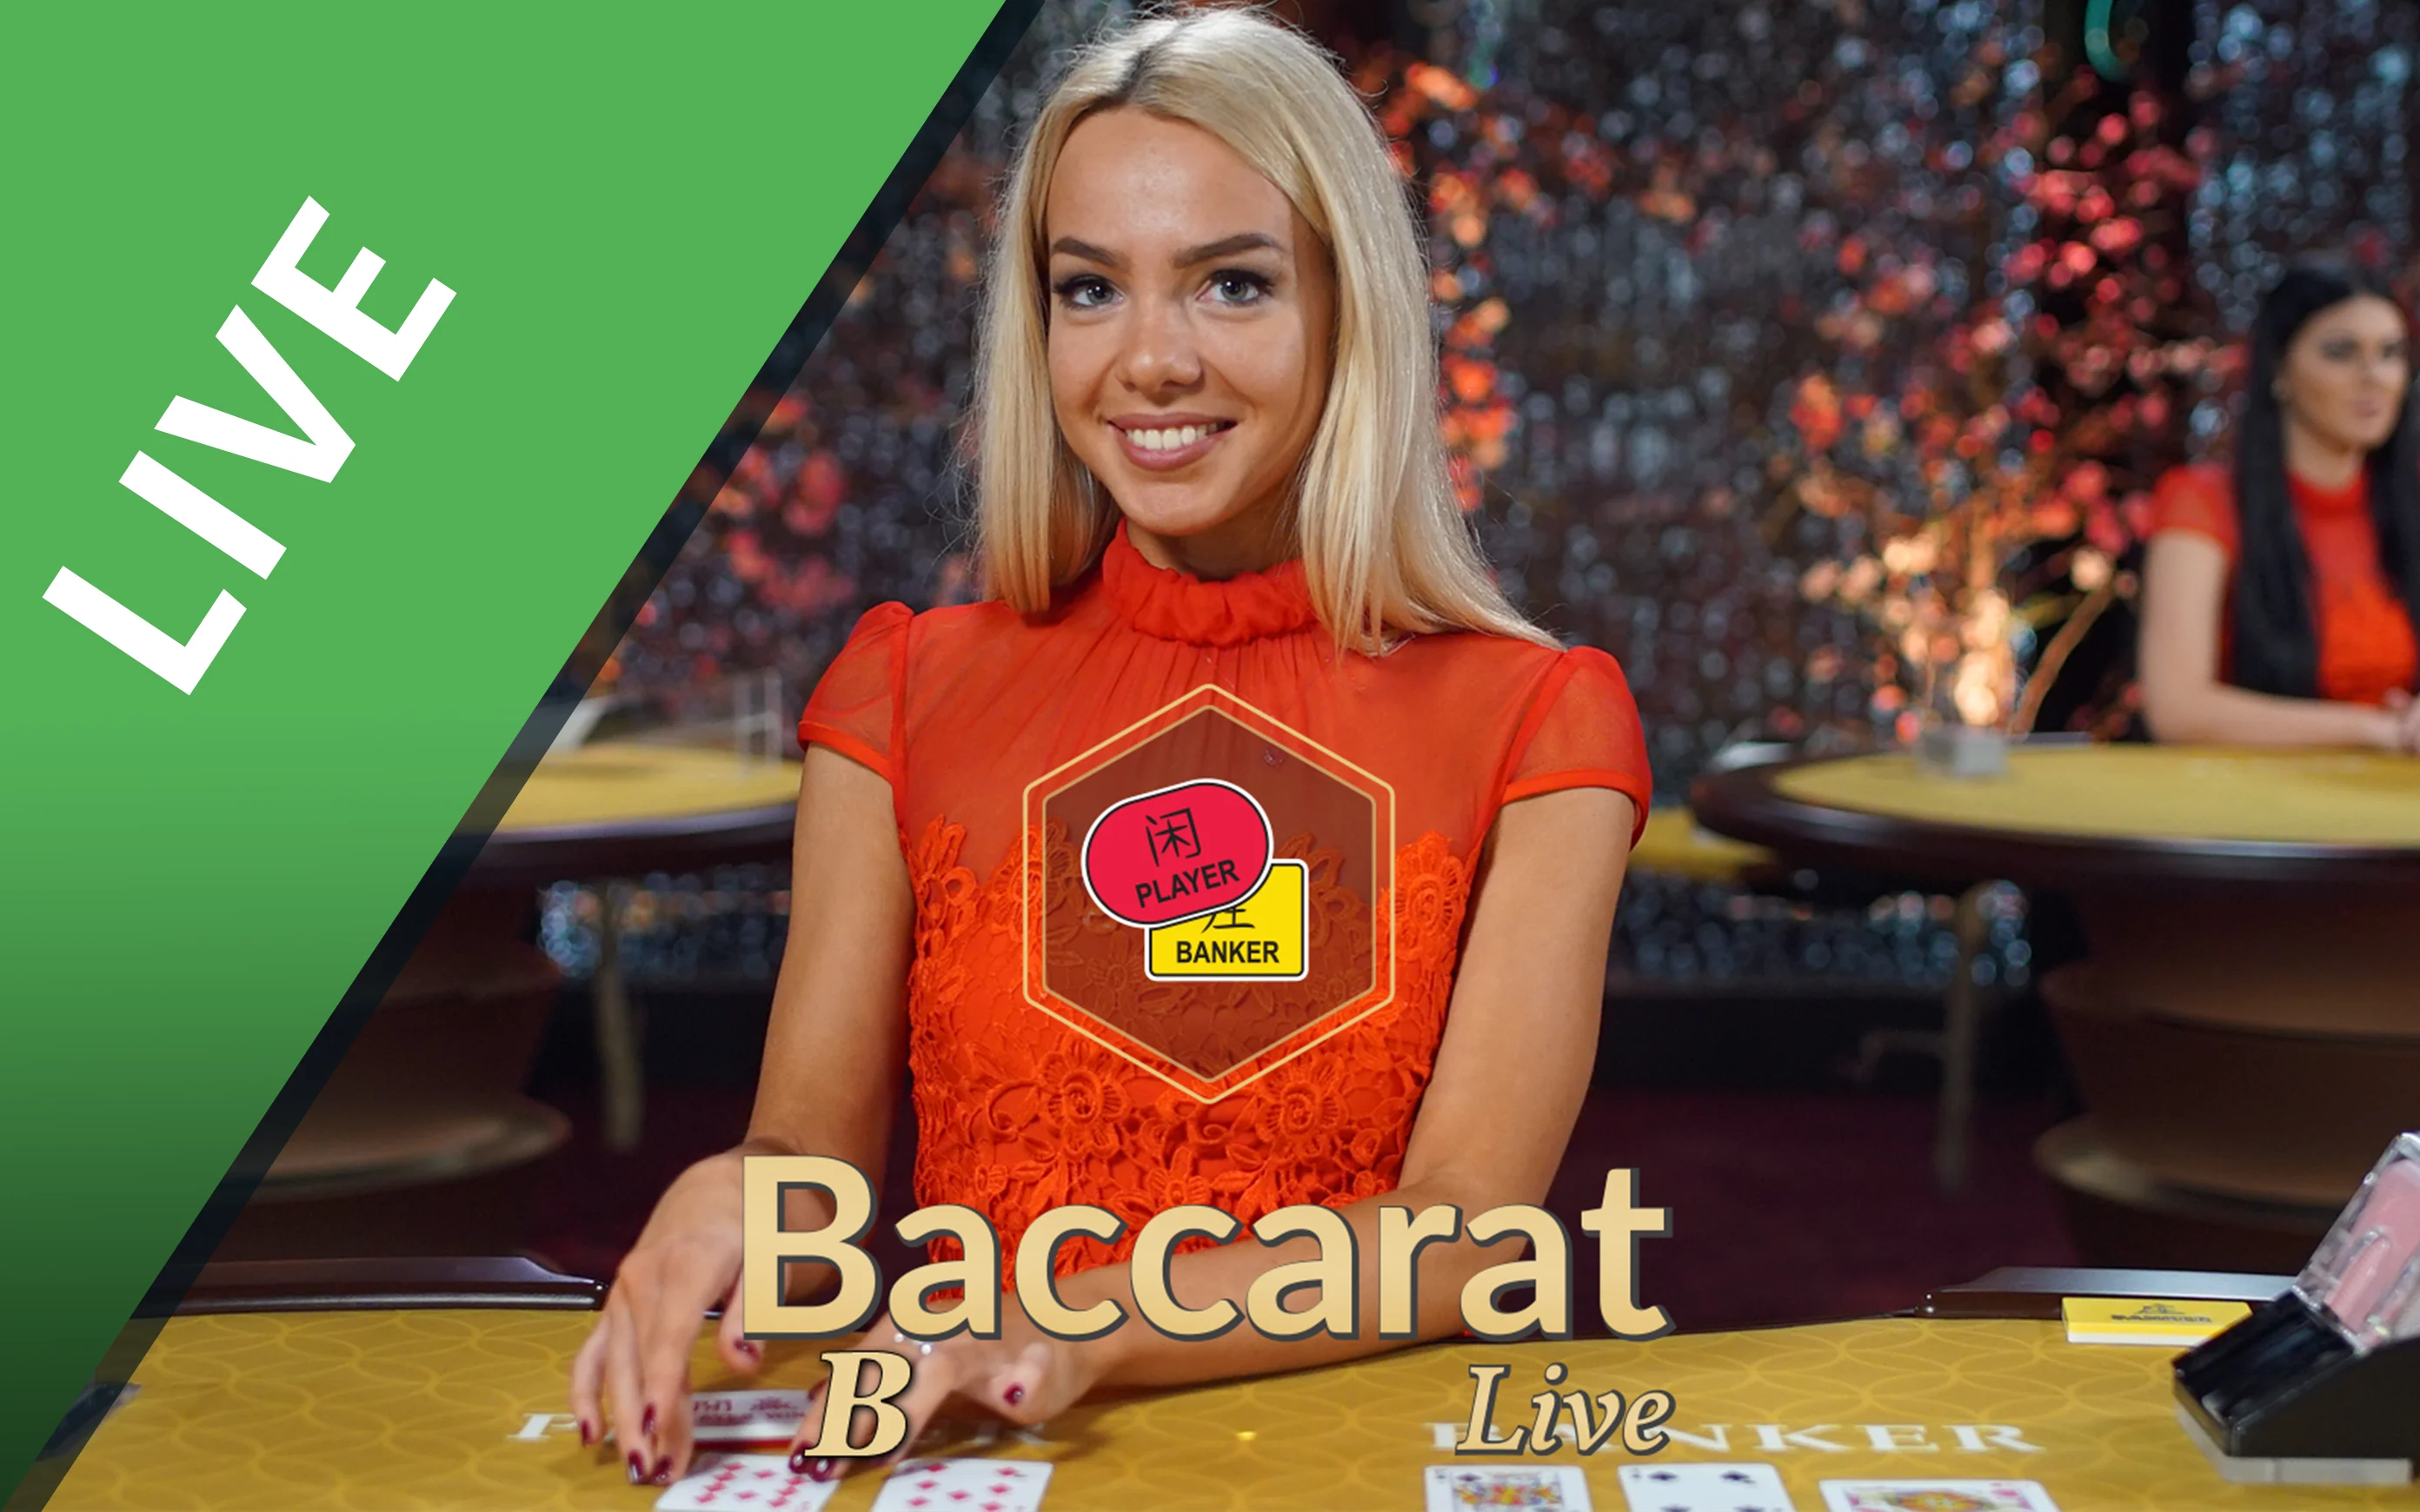 Gioca a Baccarat B sul casino online Starcasino.be